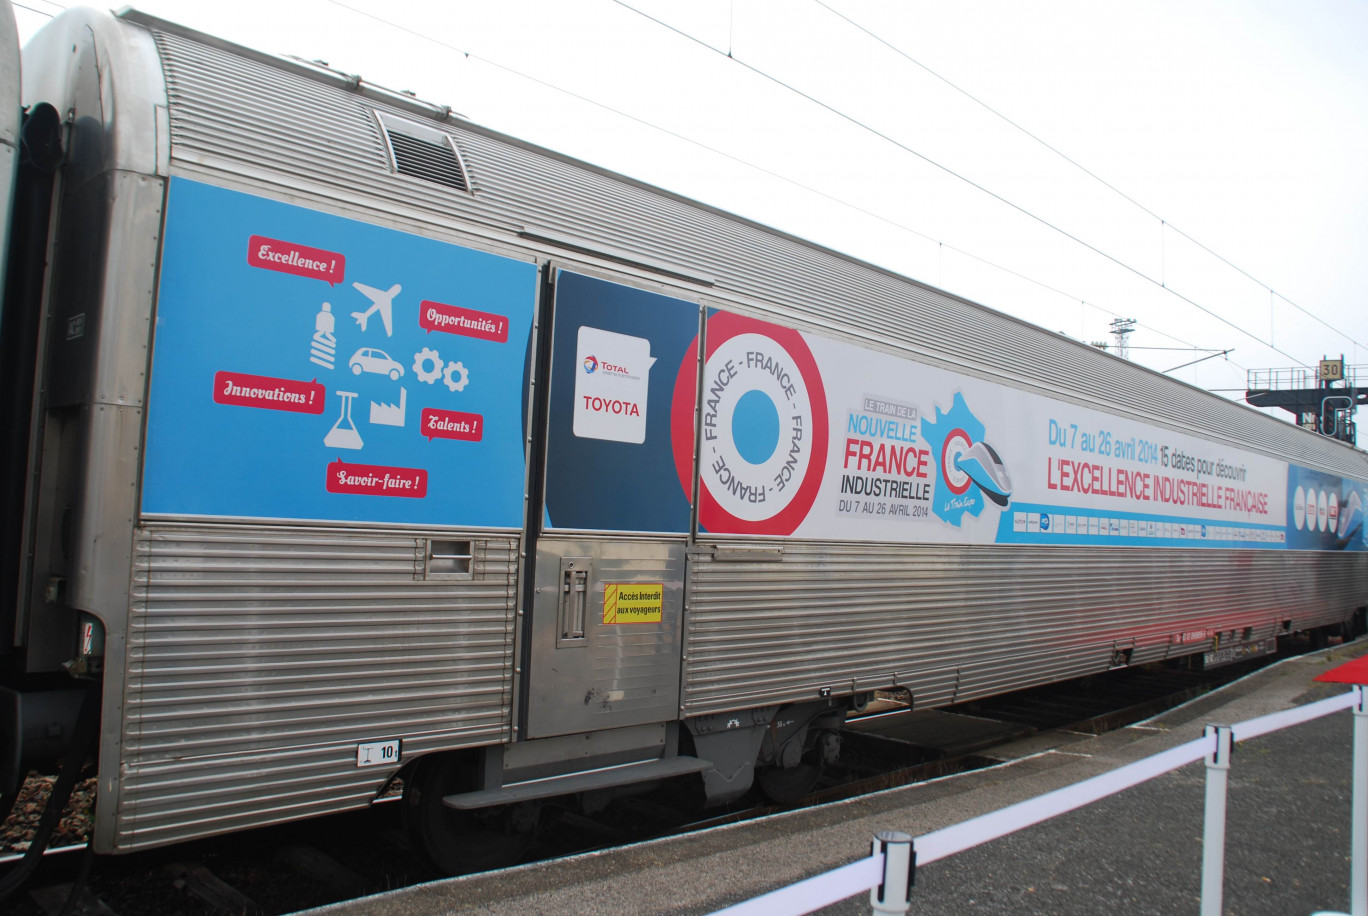 Le Train de la Nouvelle France industrielle a fait halte en gare de Boulogne-sur-Mer le 25 avril, avant terminus en gare de Lille le lendemain.